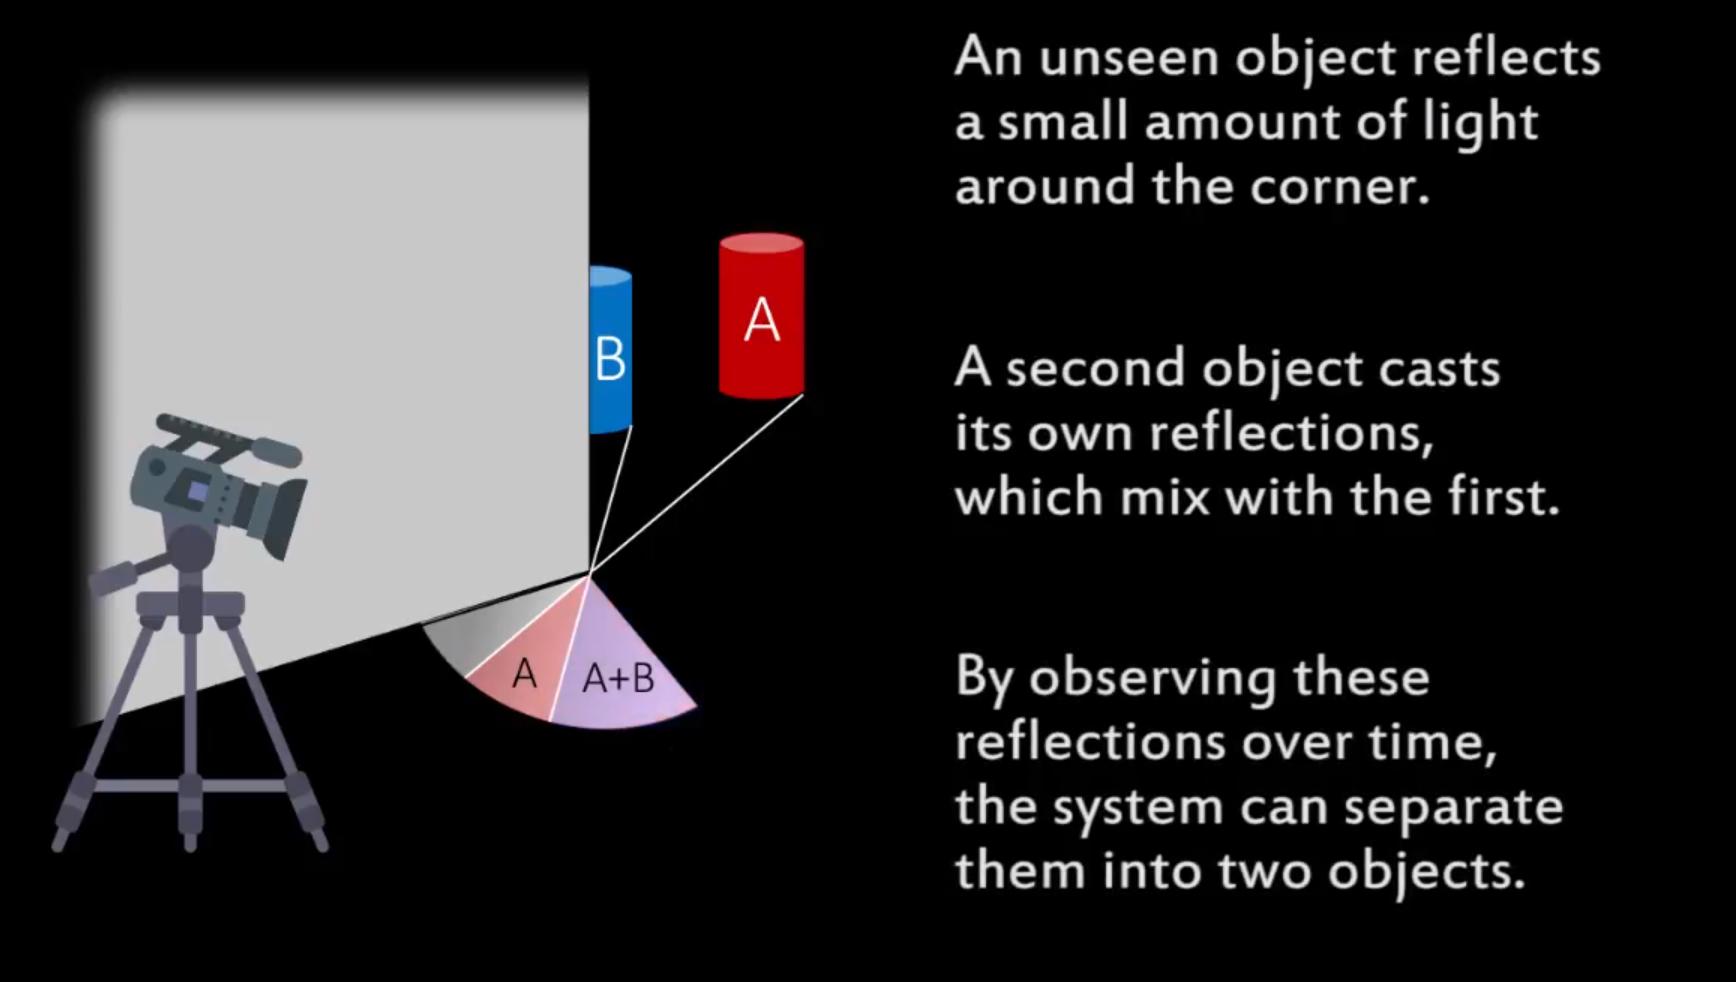 Teknologien fanger opp «usynlige» skygger fra objektene bak hjørnet og kan skille flere objekter fra hverandre.